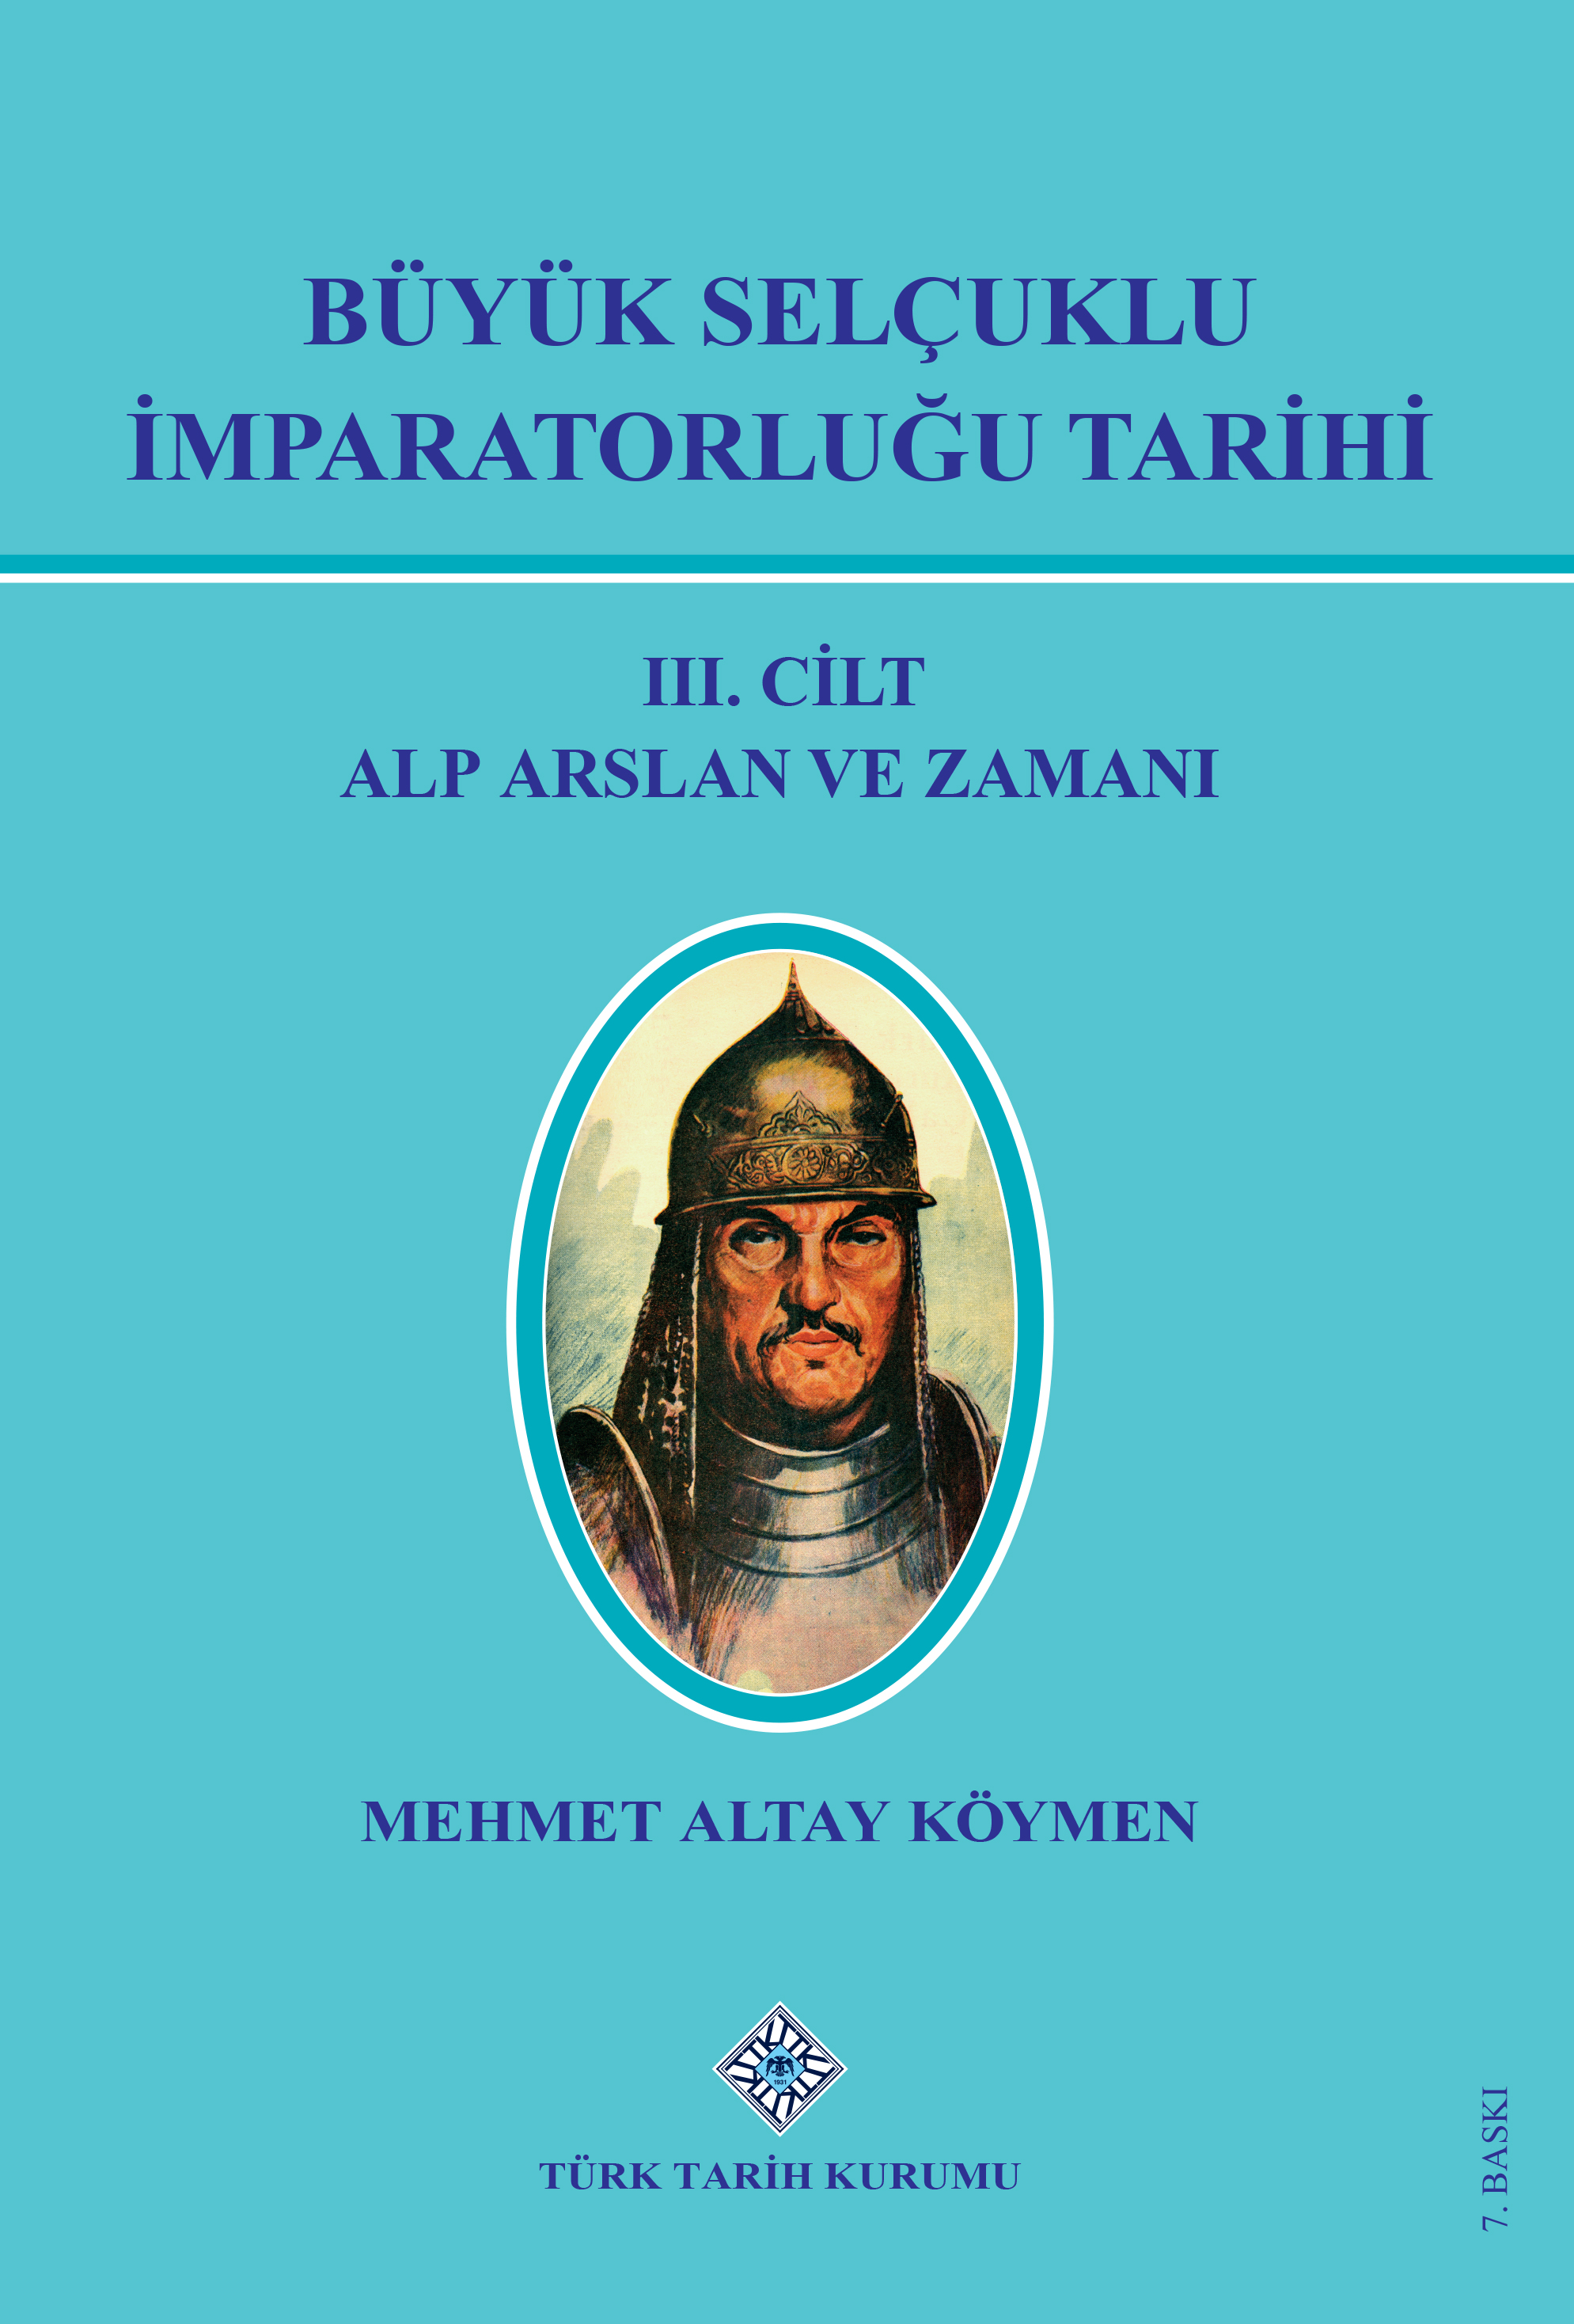 Büyük Selçuklu İmparatorluğu Tarihi III.Cilt Alp Arslan ve Zamanı, 2021